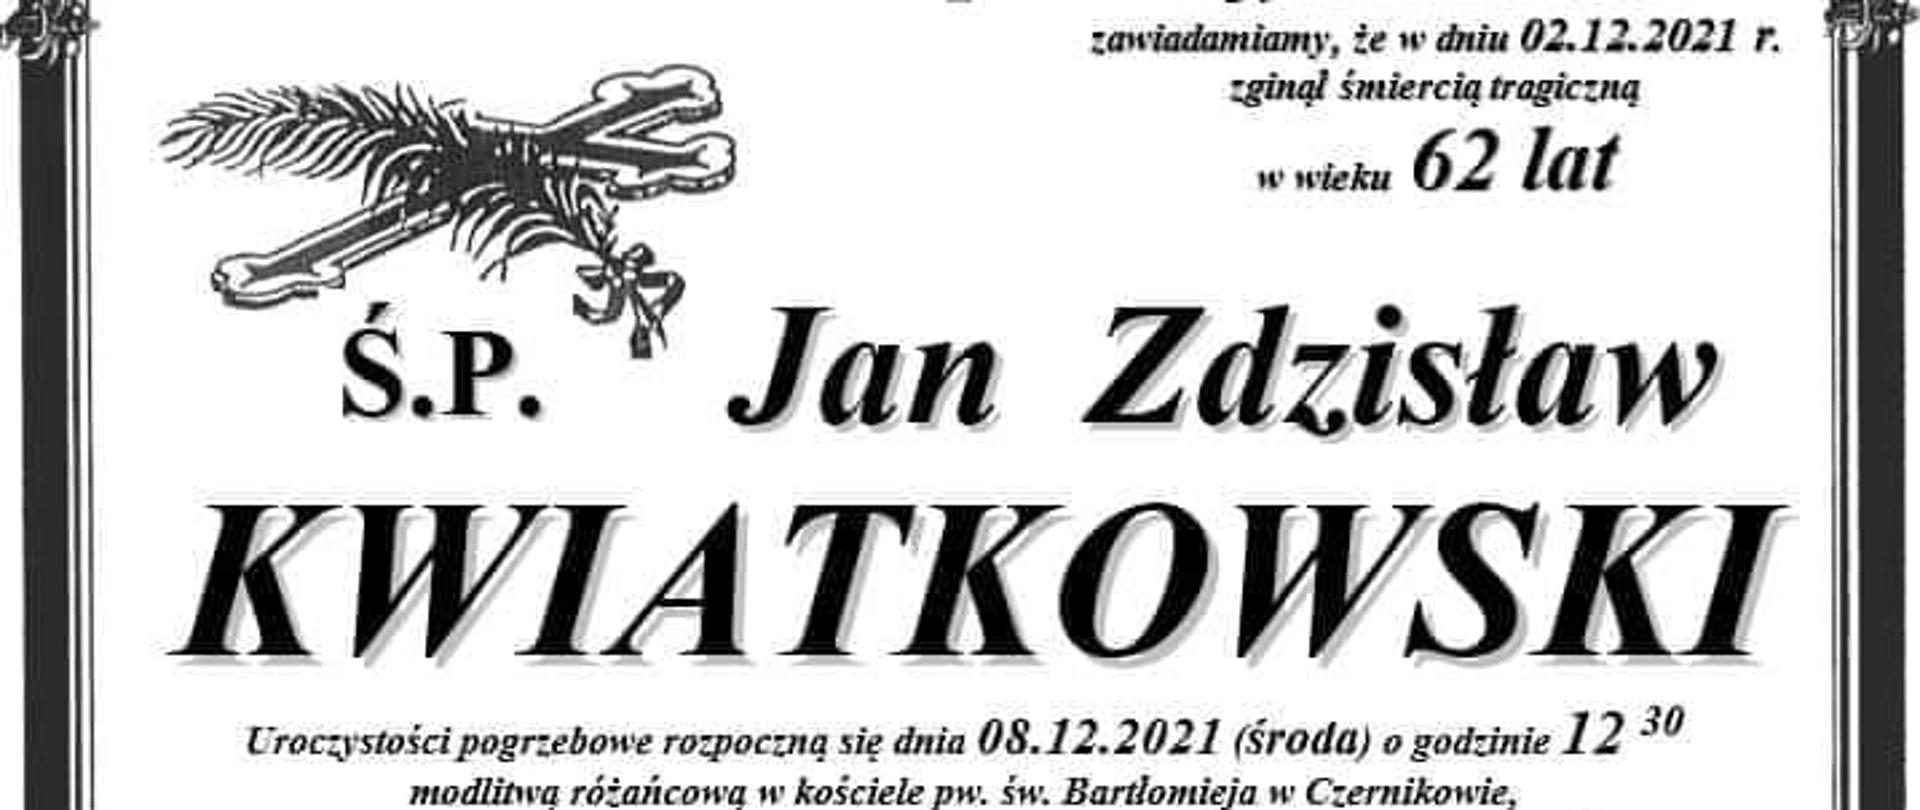 Treść nekrologu świętej pamięci Jana Kwiatkowskiego